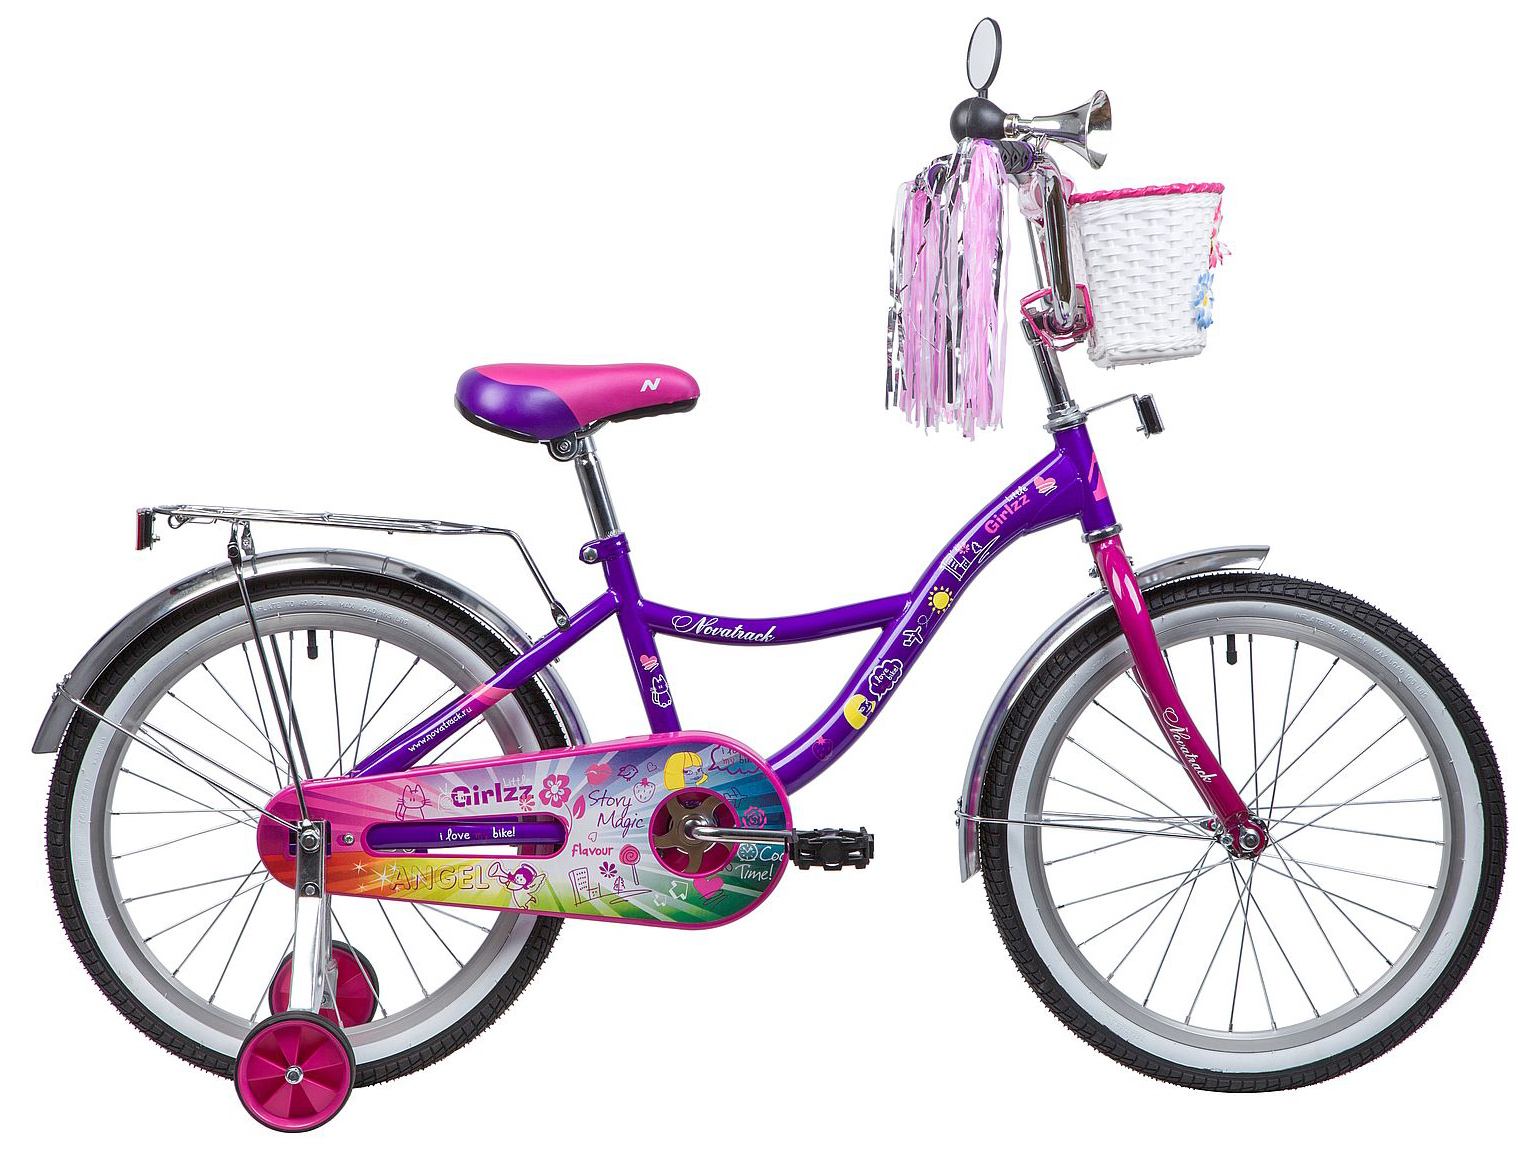  Отзывы о Детском велосипеде Novatrack Little Girlzz 20 2019